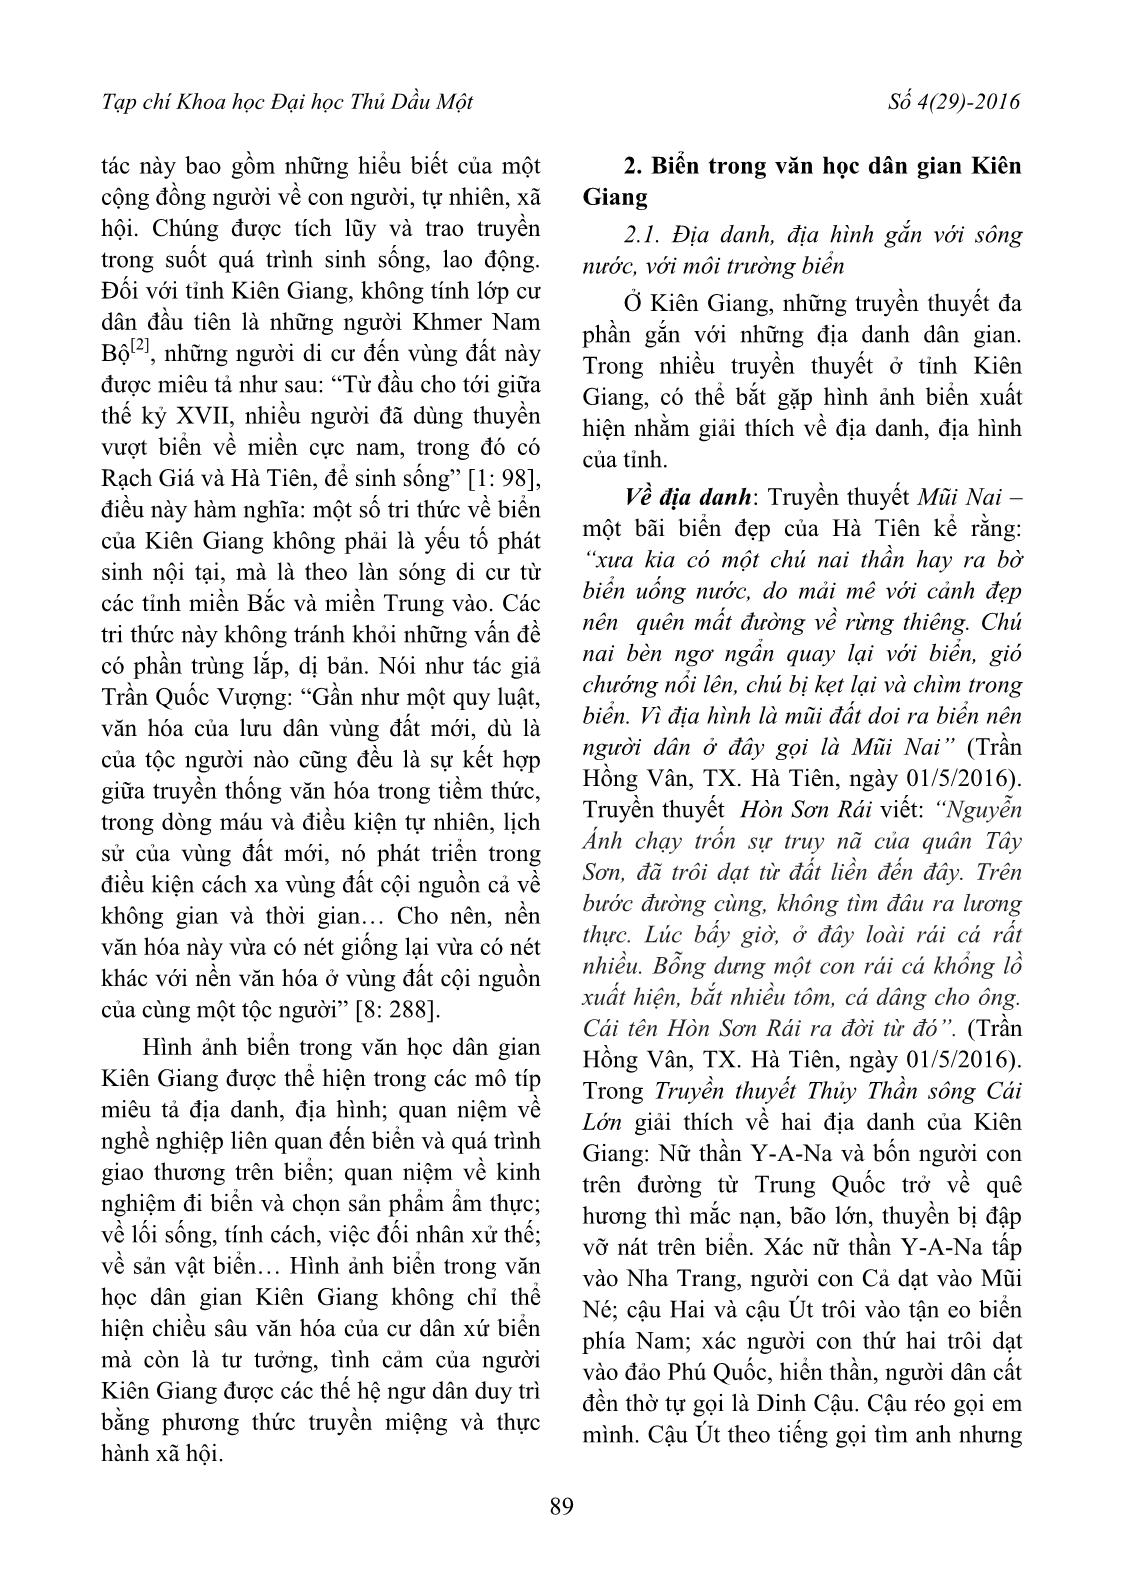 Biển trong văn học dân gian Kiên Giang trang 2